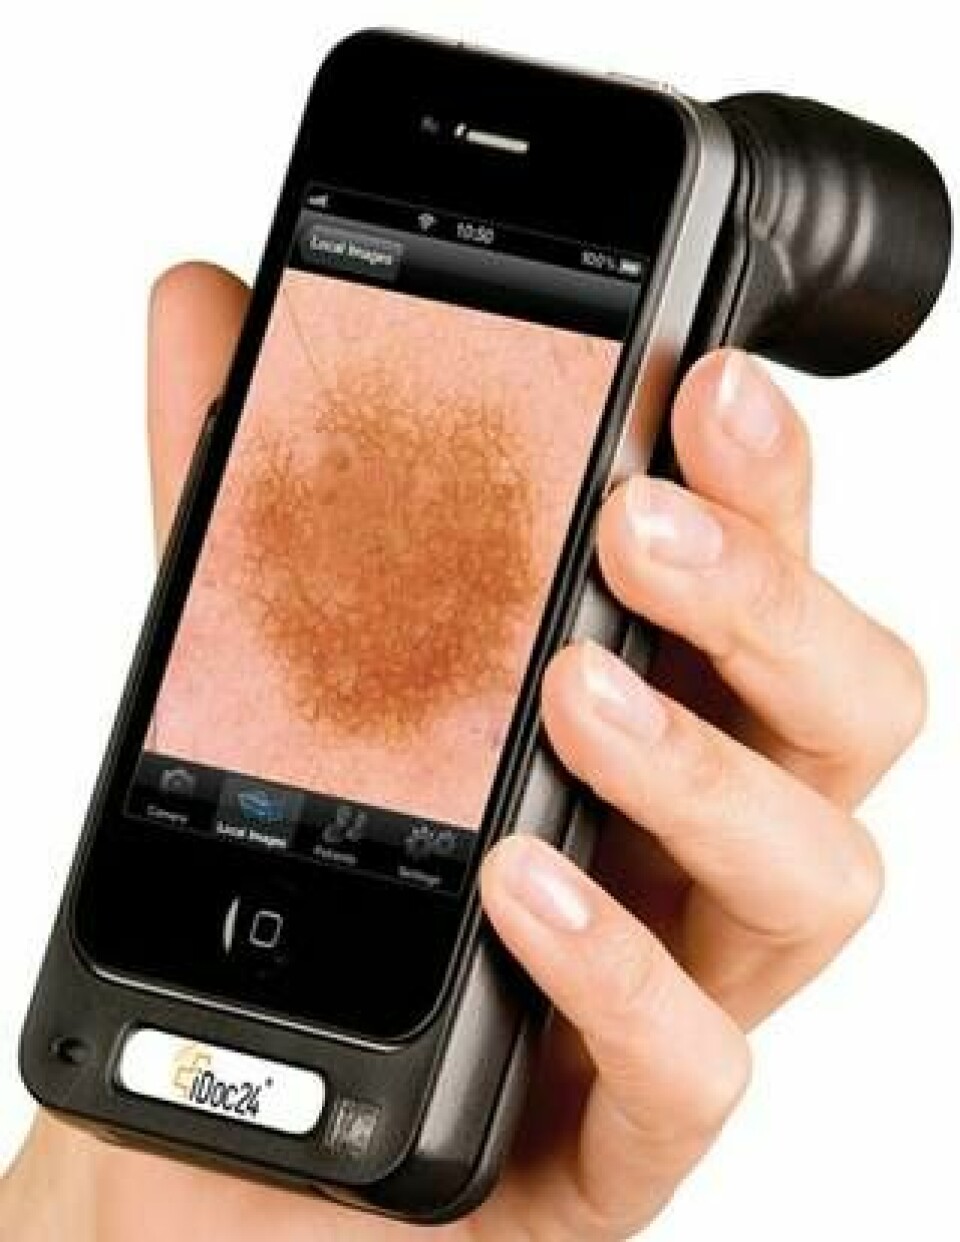 Det medicinska förstoringsglaset Handyscopy förvandlar den smarta telefonen till ett digitalt mikroskop för hudförändringar. Den misstänkta fläcken förstoras 20 gånger innan den skickas vidare tillsammans med en digital remiss.